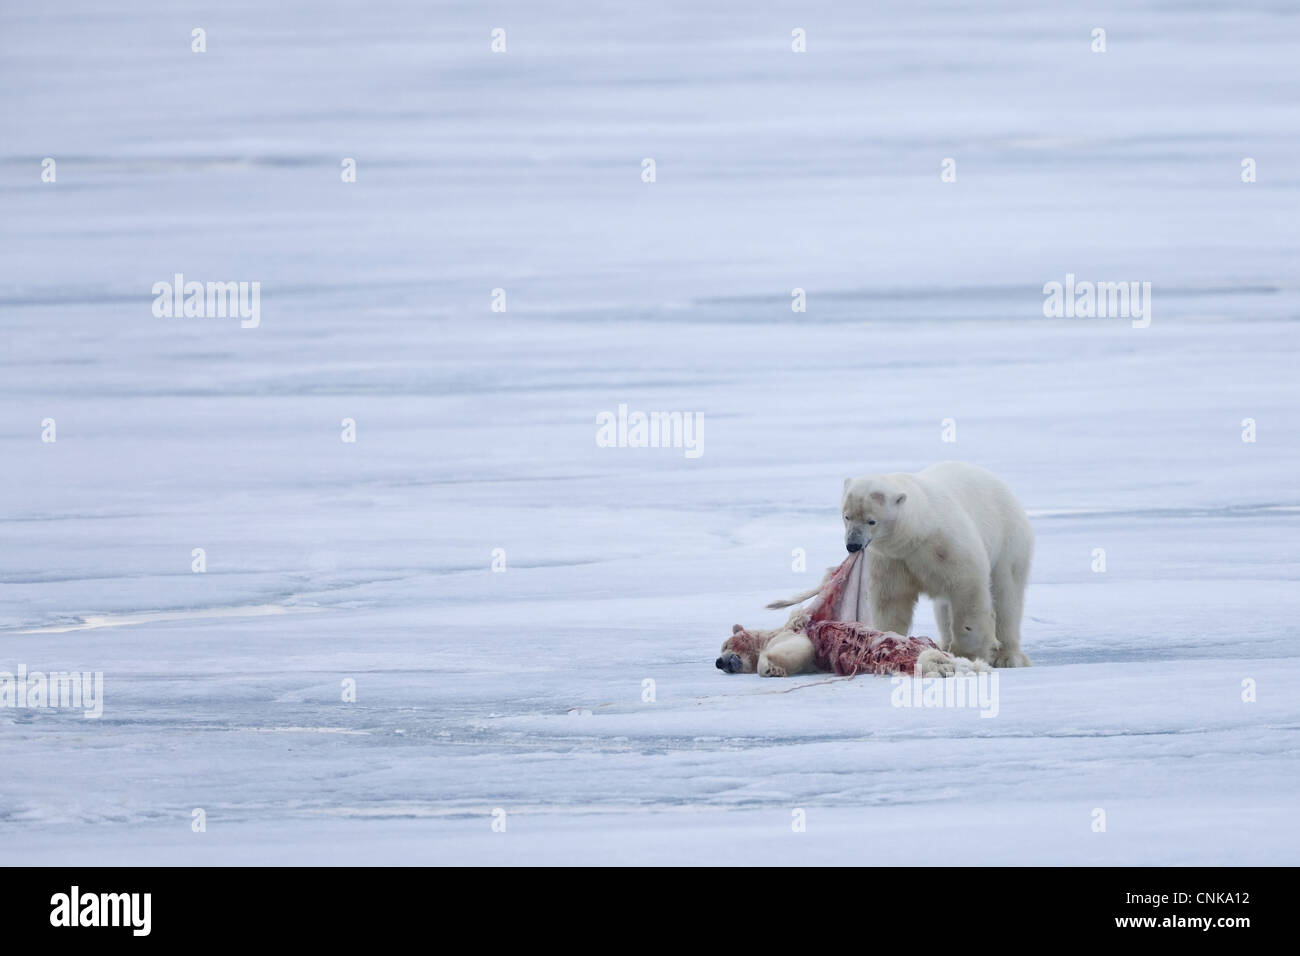 L'ours polaire (Ursus maritimus) adulte, l'alimentation, le cannibalisme des jeunes, sur la banquise, Spitsbergen, Svalbard, septembre Banque D'Images